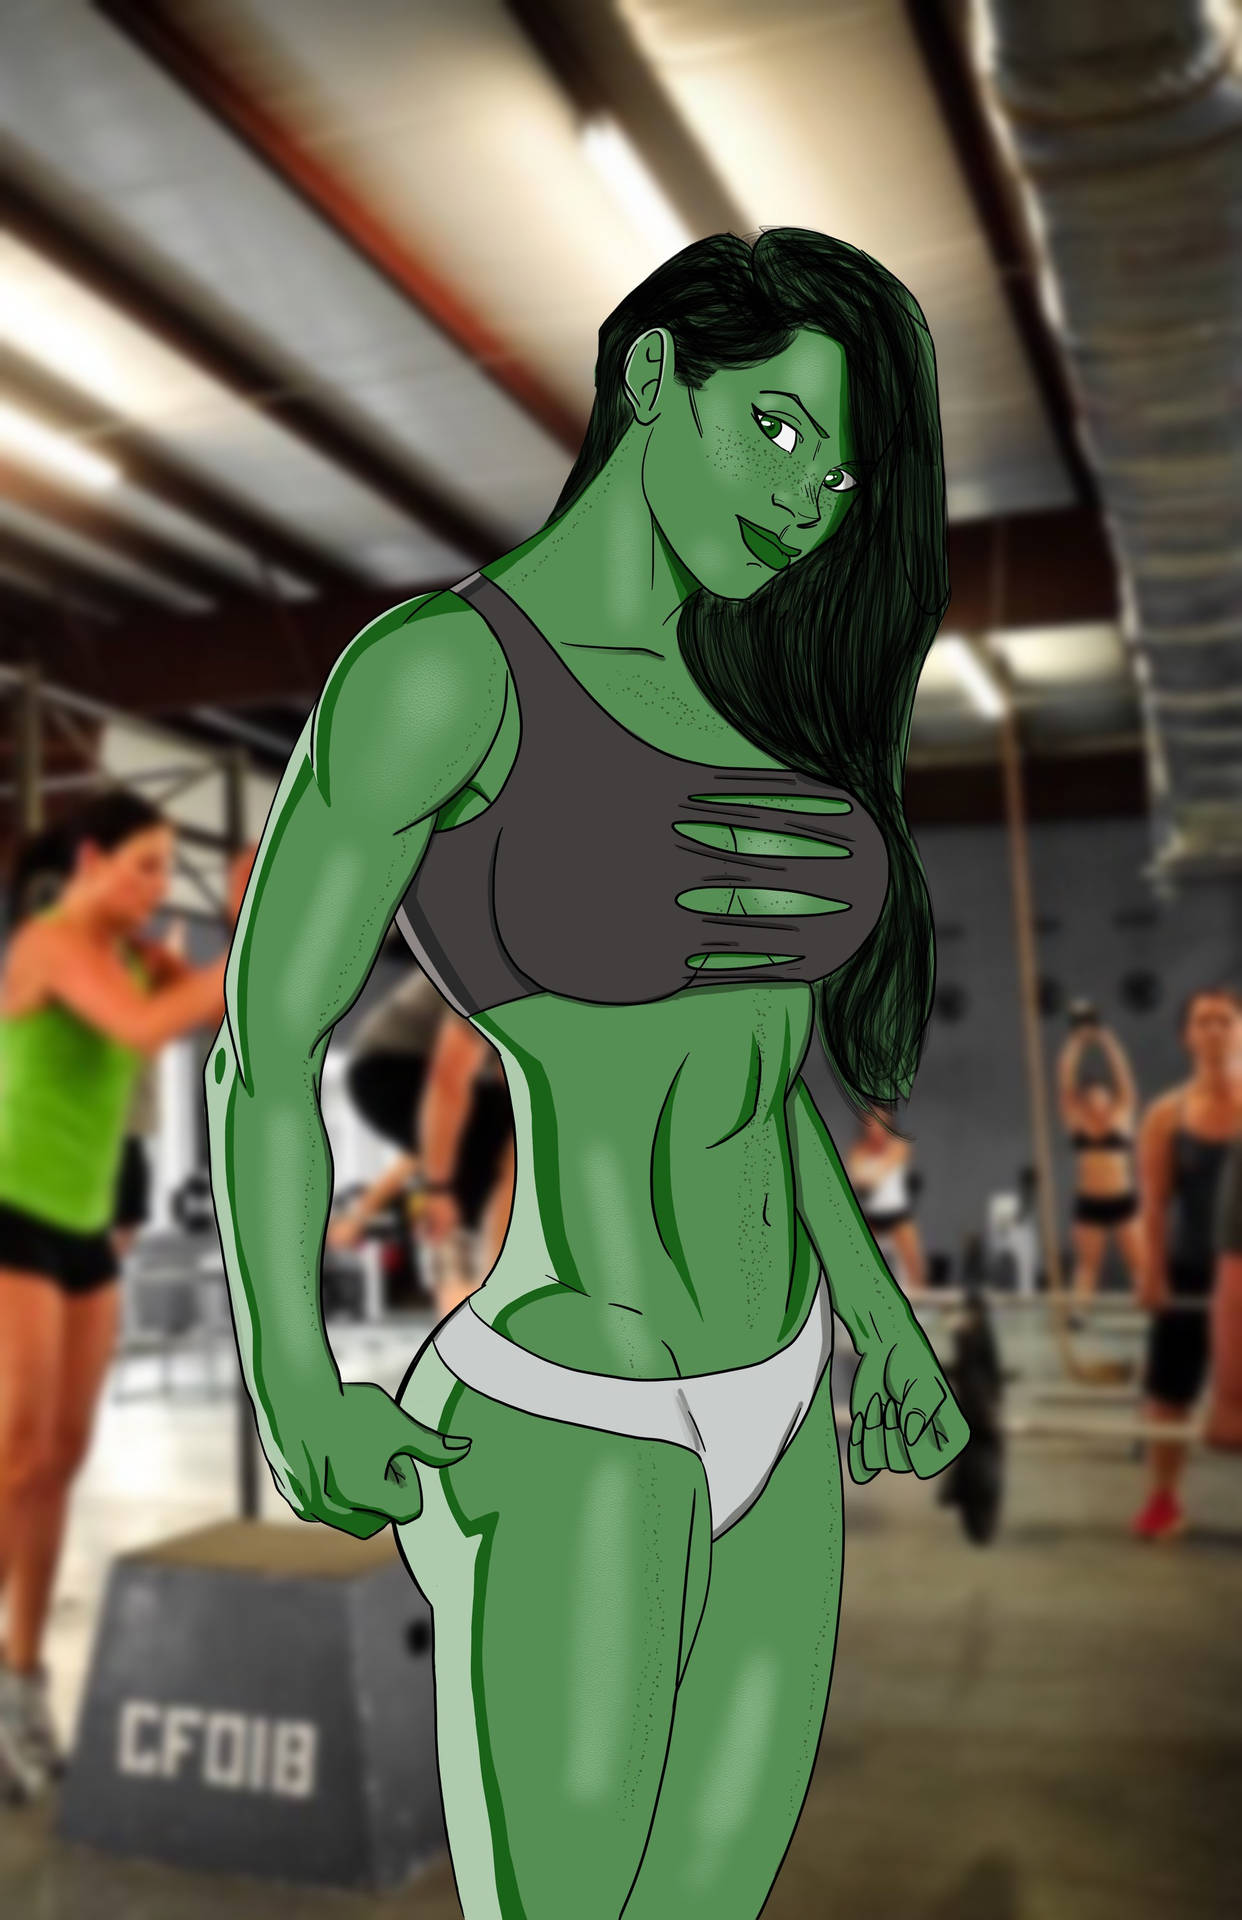 She Hulk At The Gym